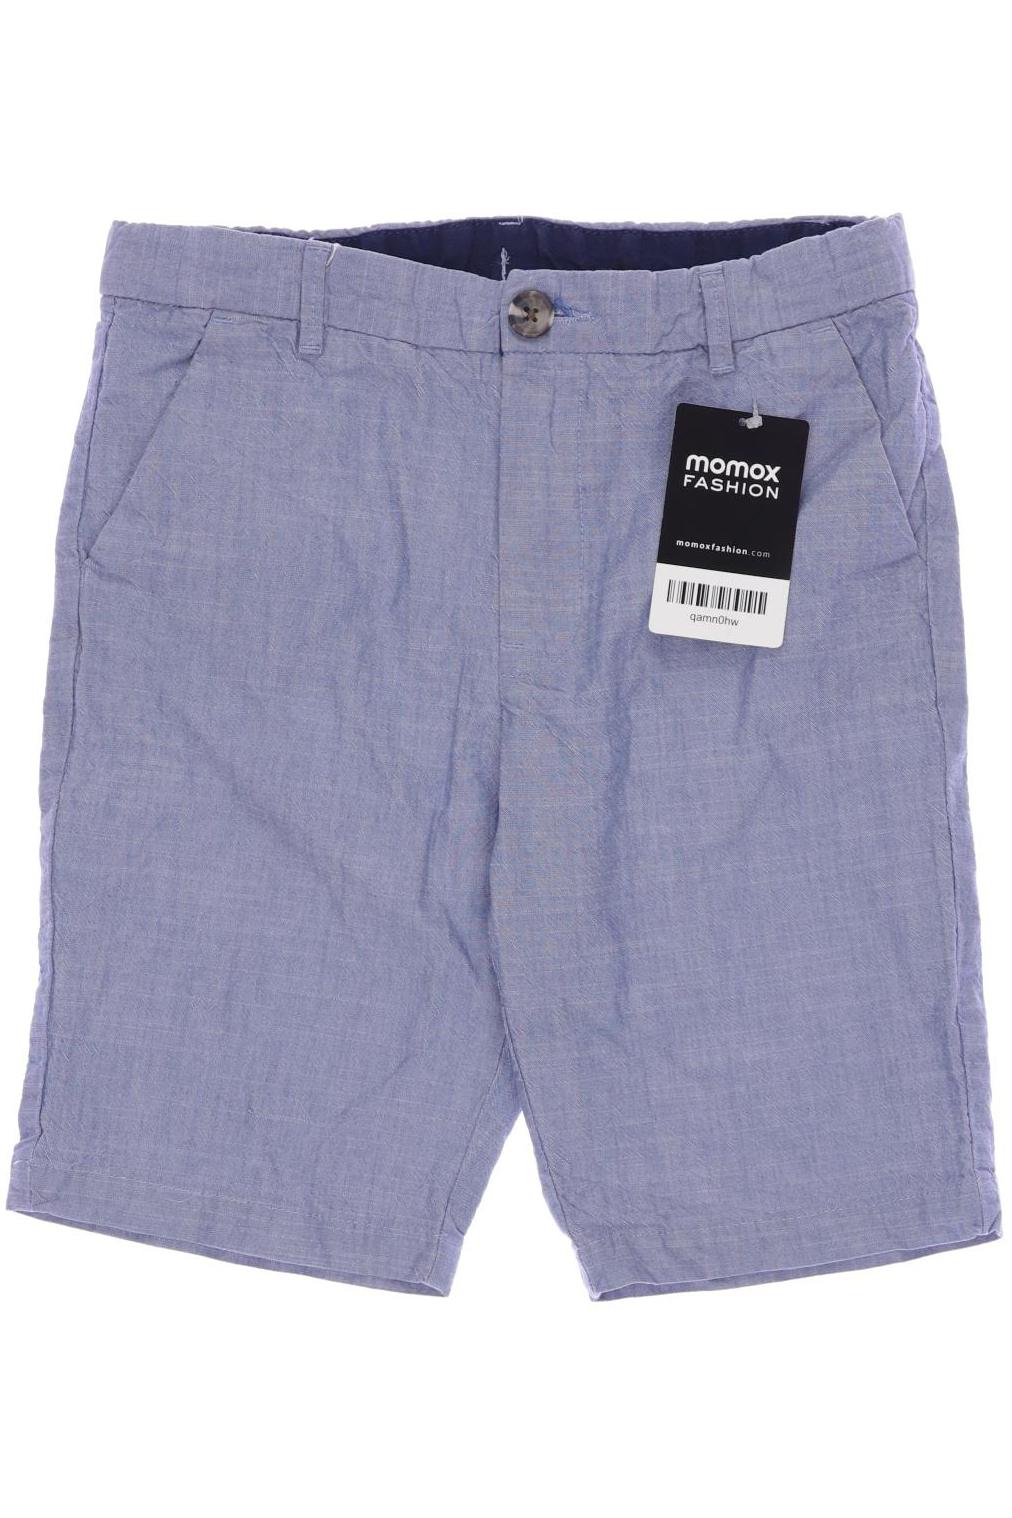 H&M Herren Shorts, hellblau, Gr. 134 von H&M